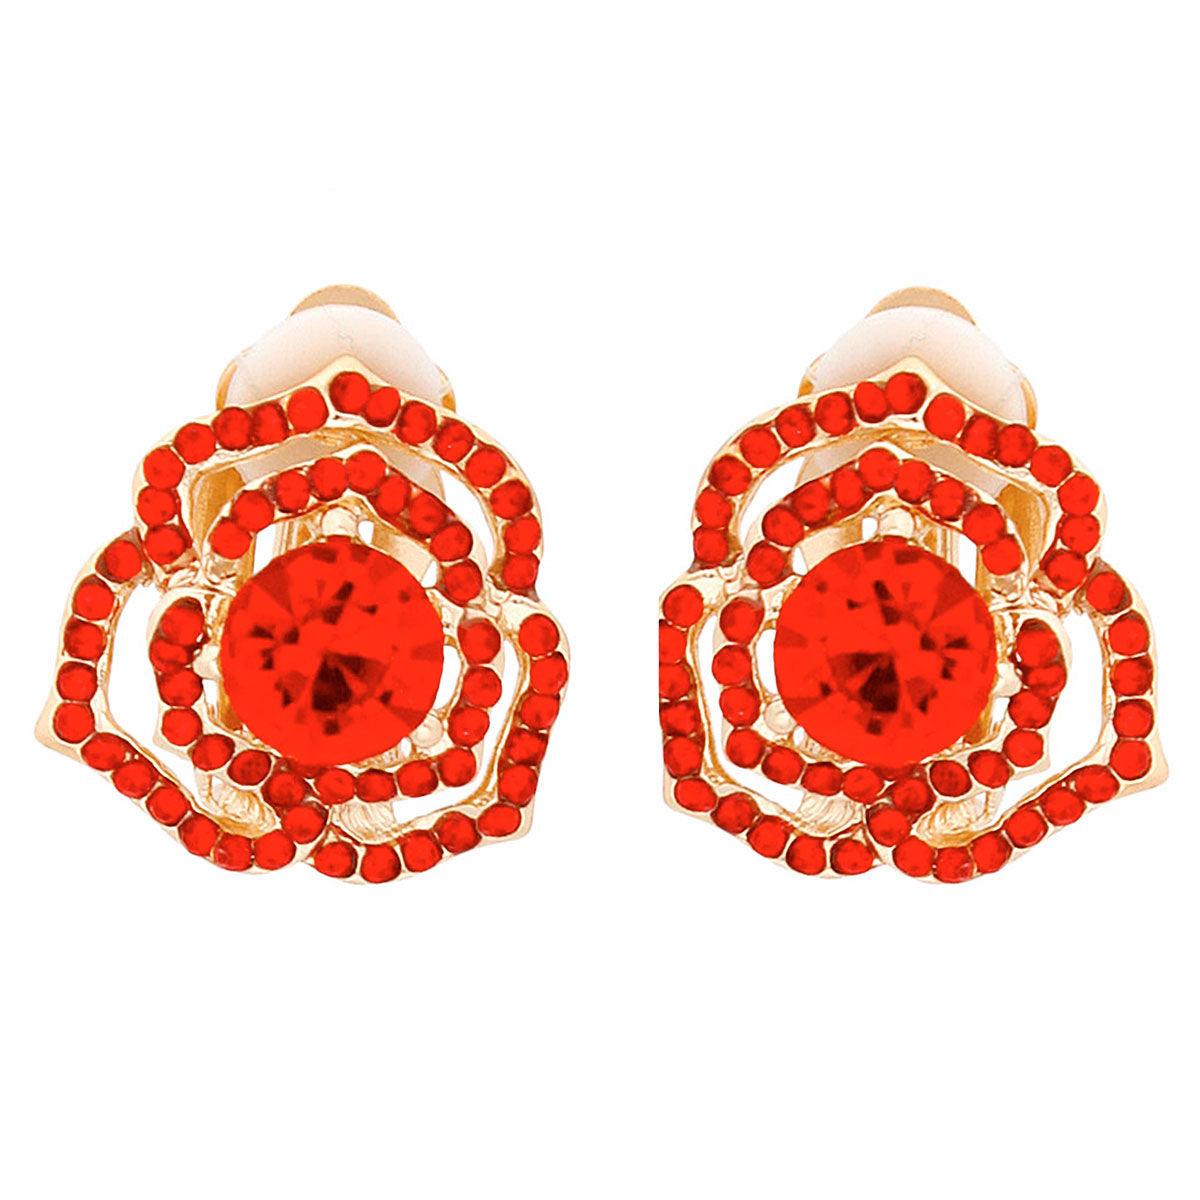 Red Rosette Open Stud Earrings: Dainty & Delightful Fashion Jewelry